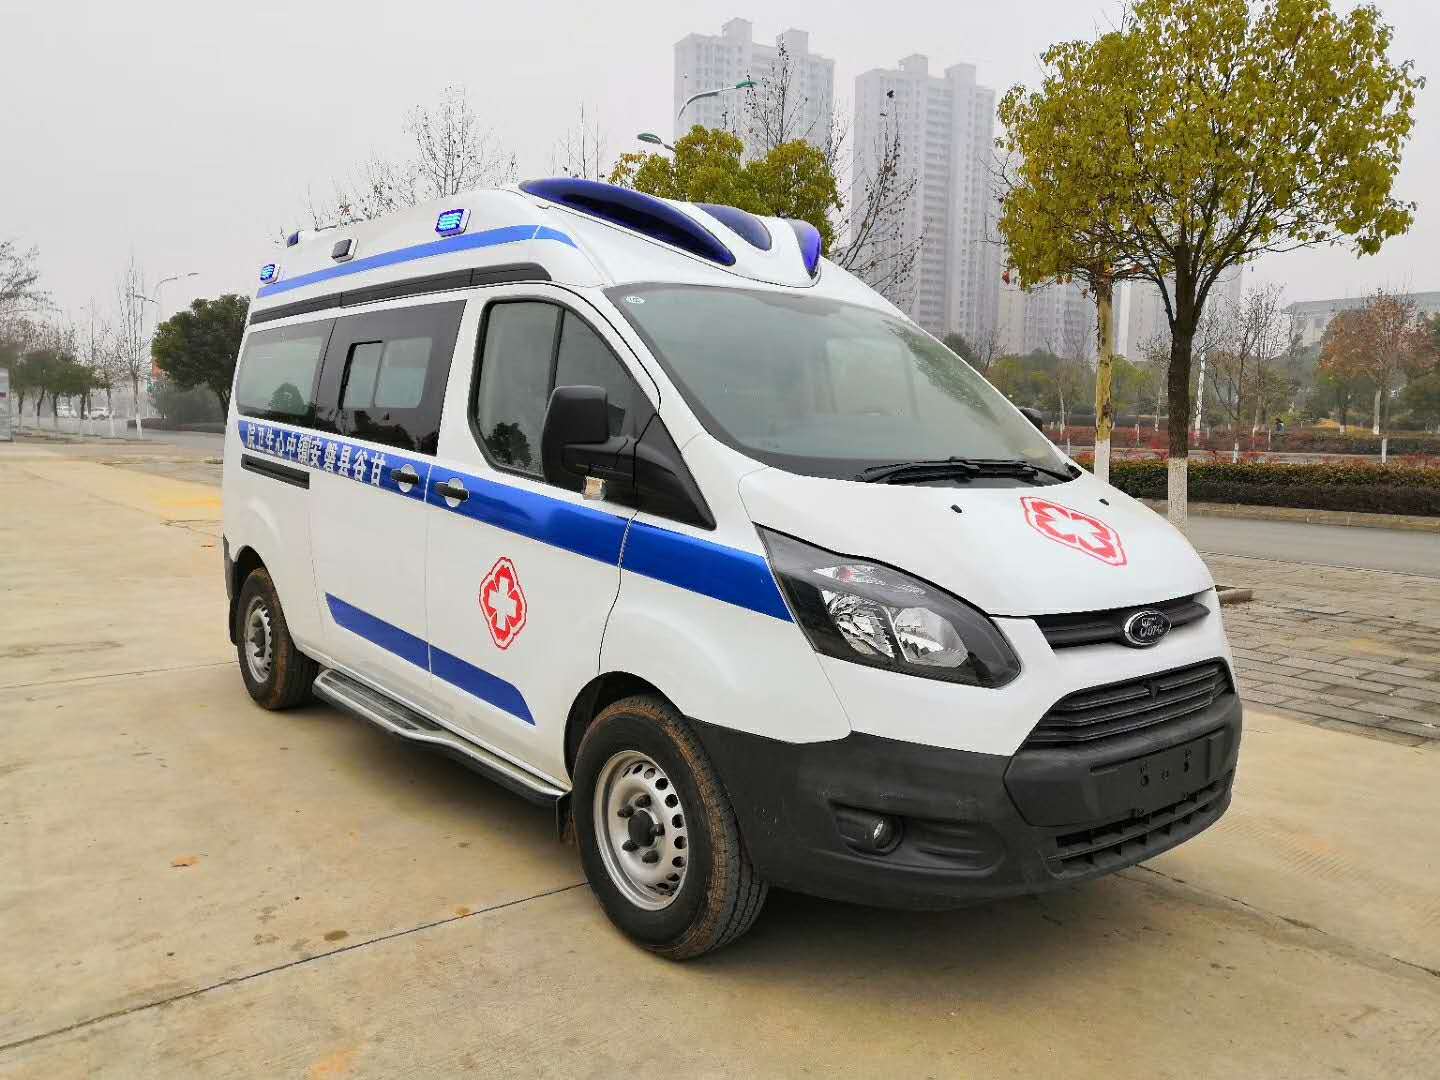 Factory price Transit emergency ICU ambulance vehicle Ambulance